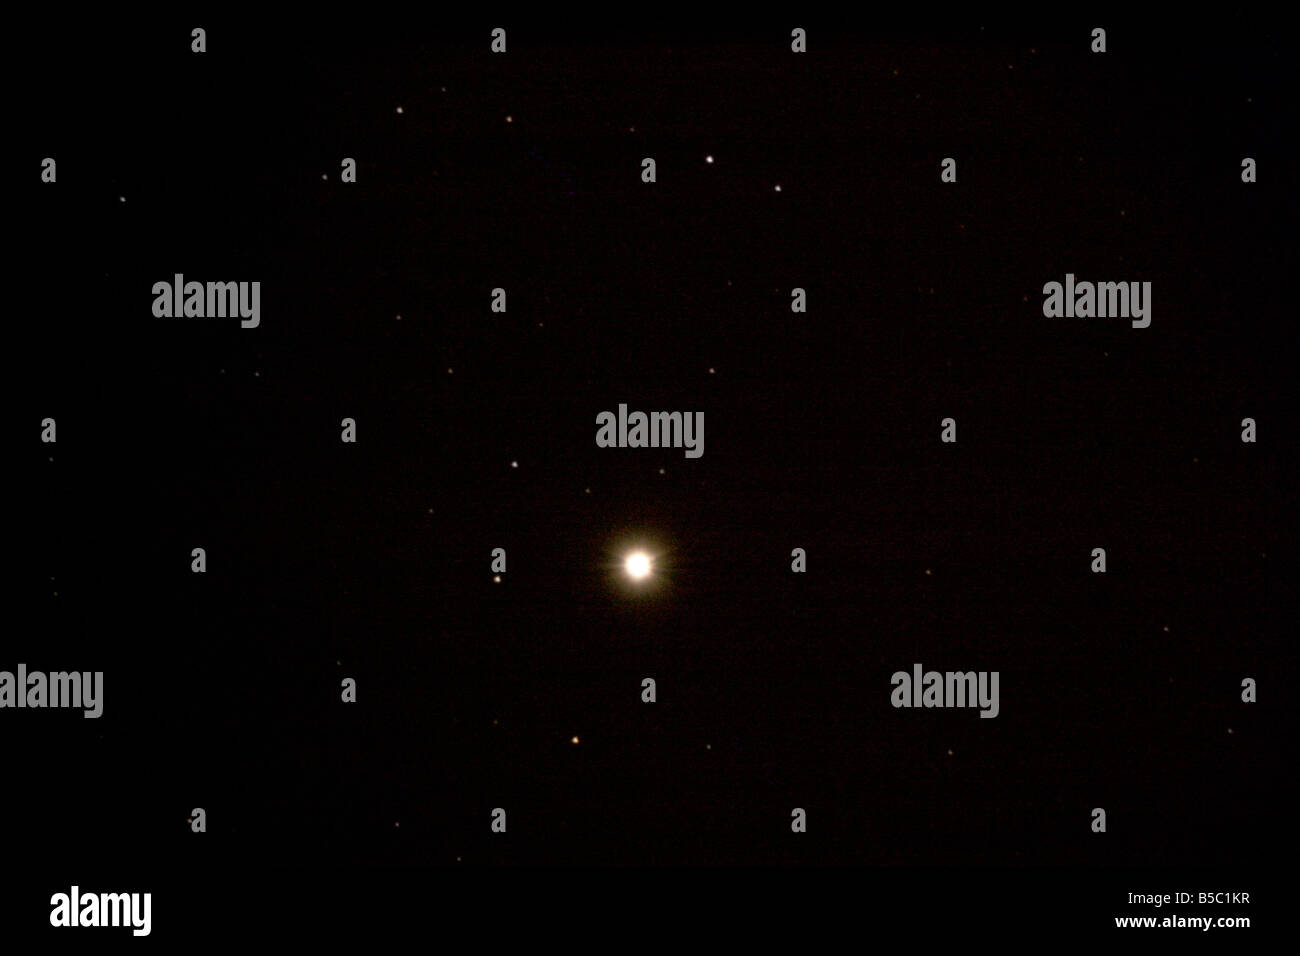 Closeup of the star Hamal, Alpha Arietis. Stock Photo